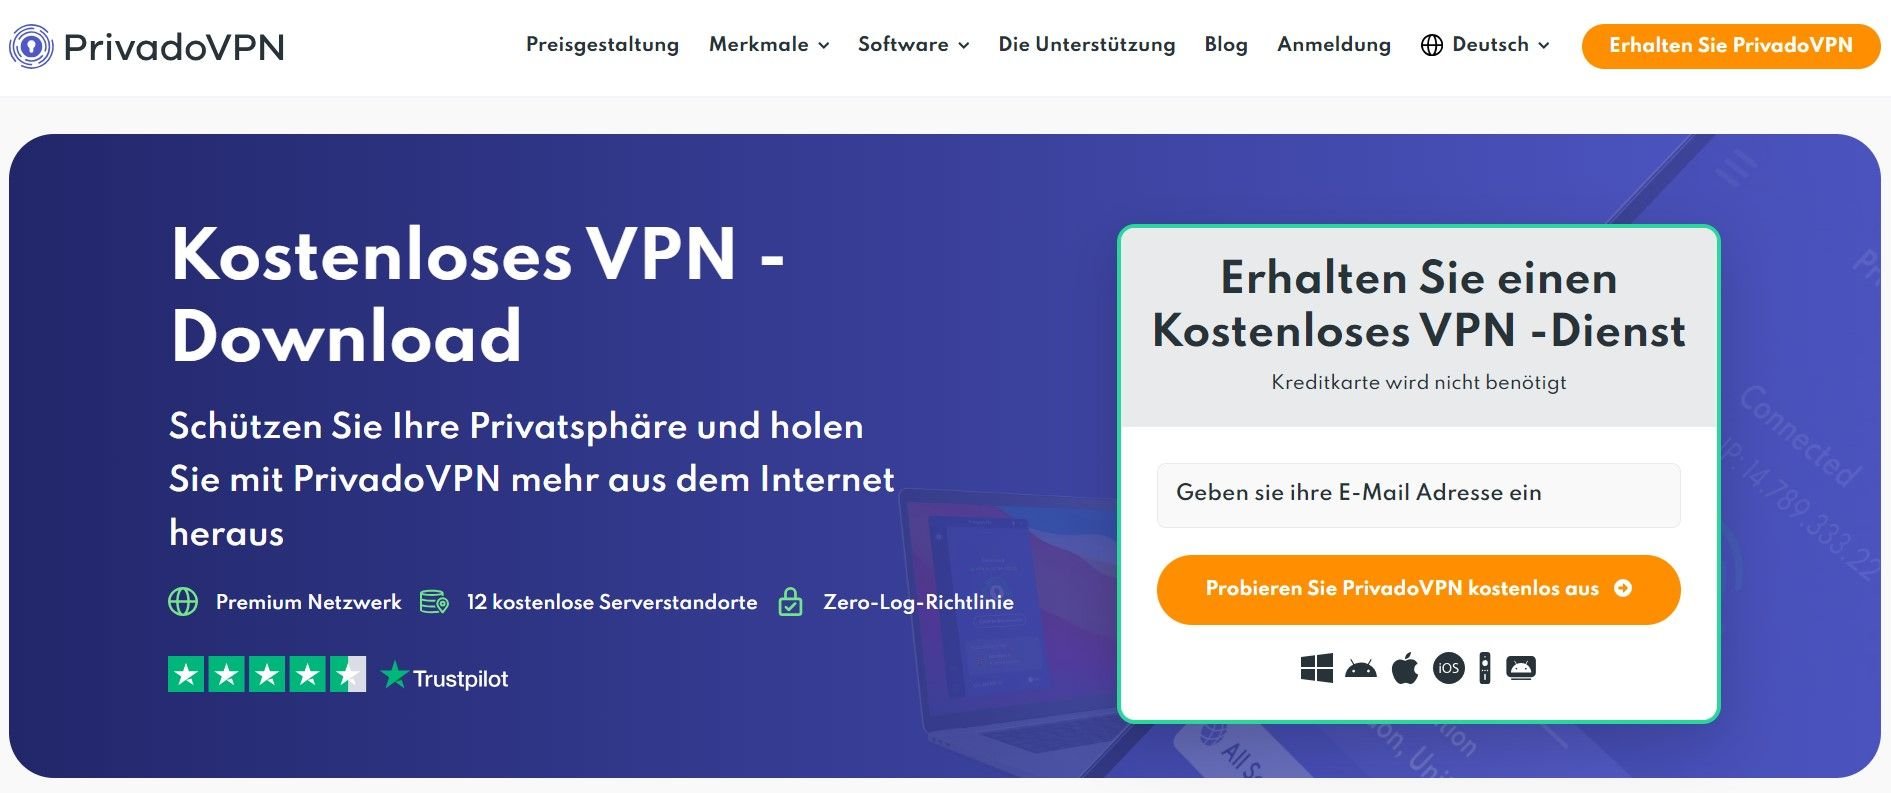 PrivadoVPN bestes kostenloses VPN Russland gratis